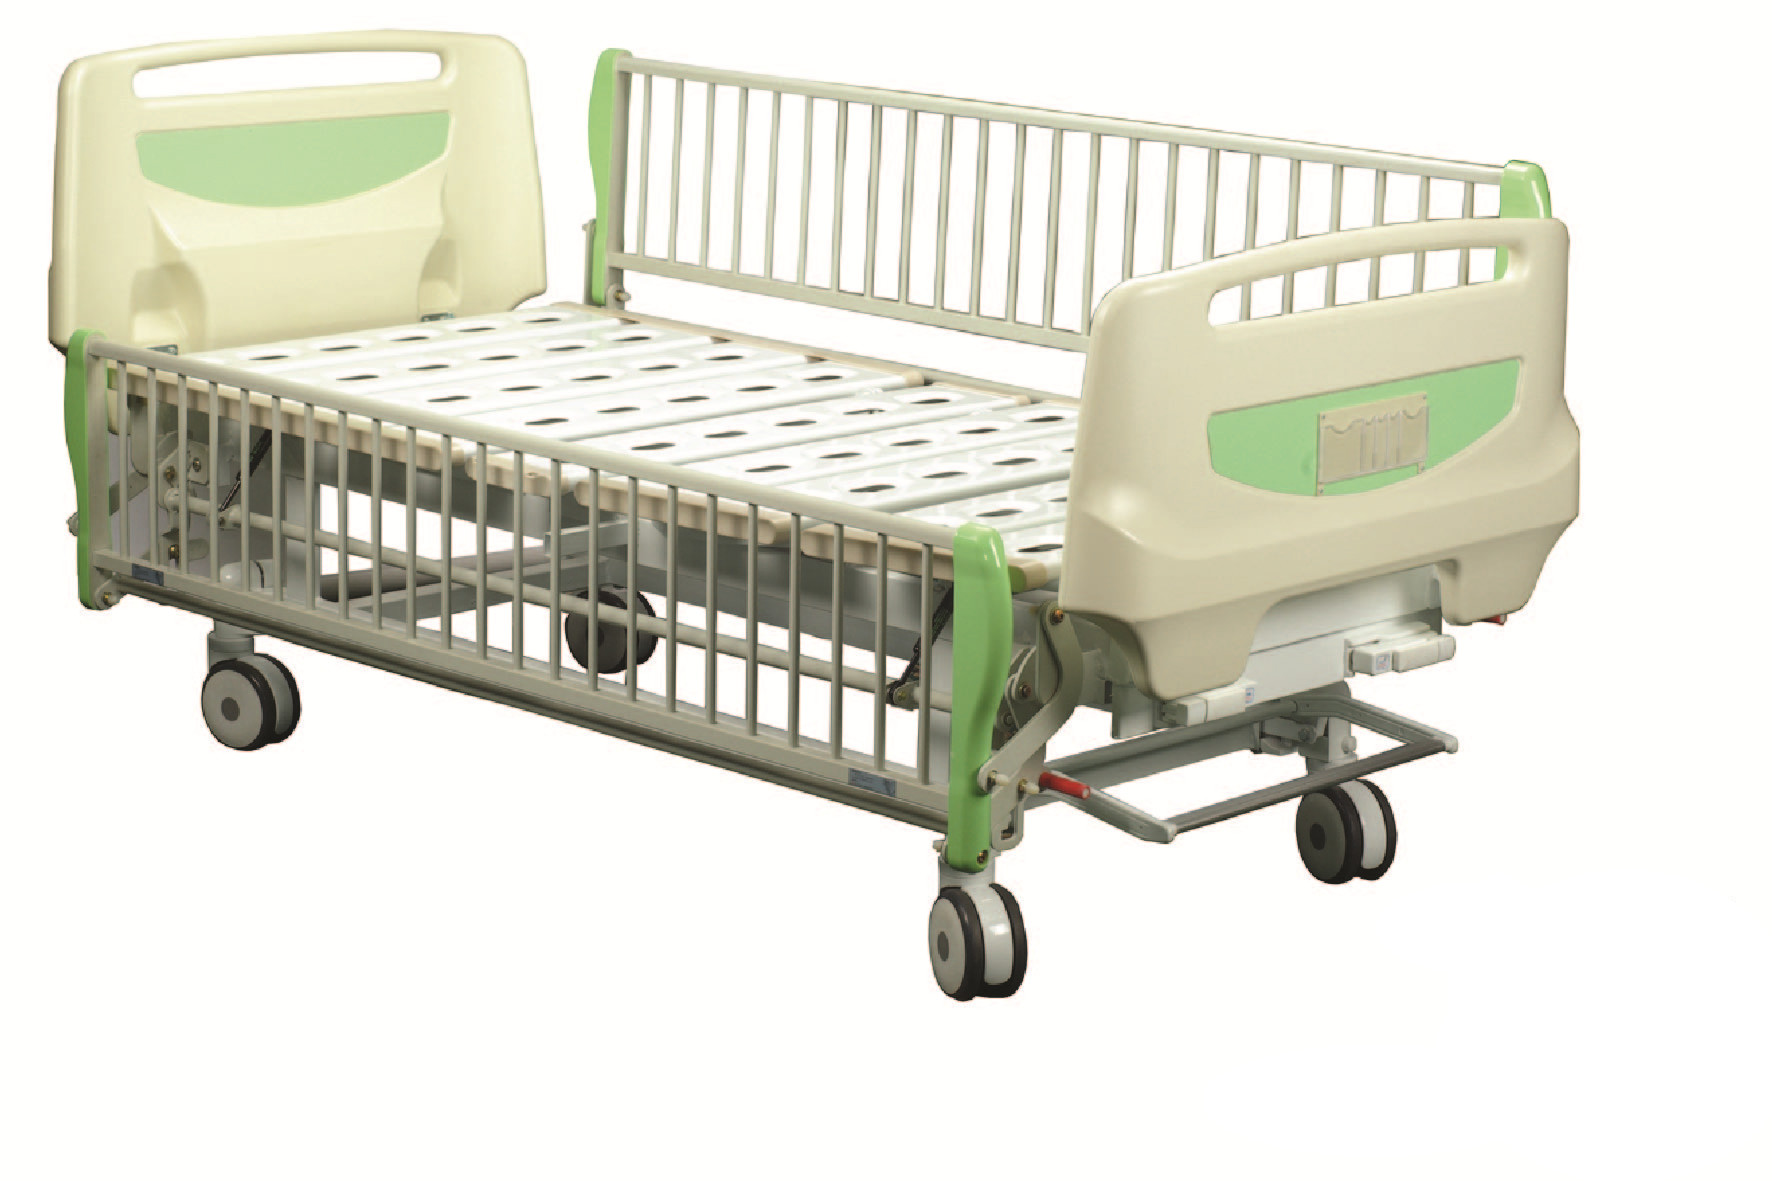 厂家直销 RSE12-C 双摇手儿童病床 长护栏儿童床 草绿色温馨儿童护理床